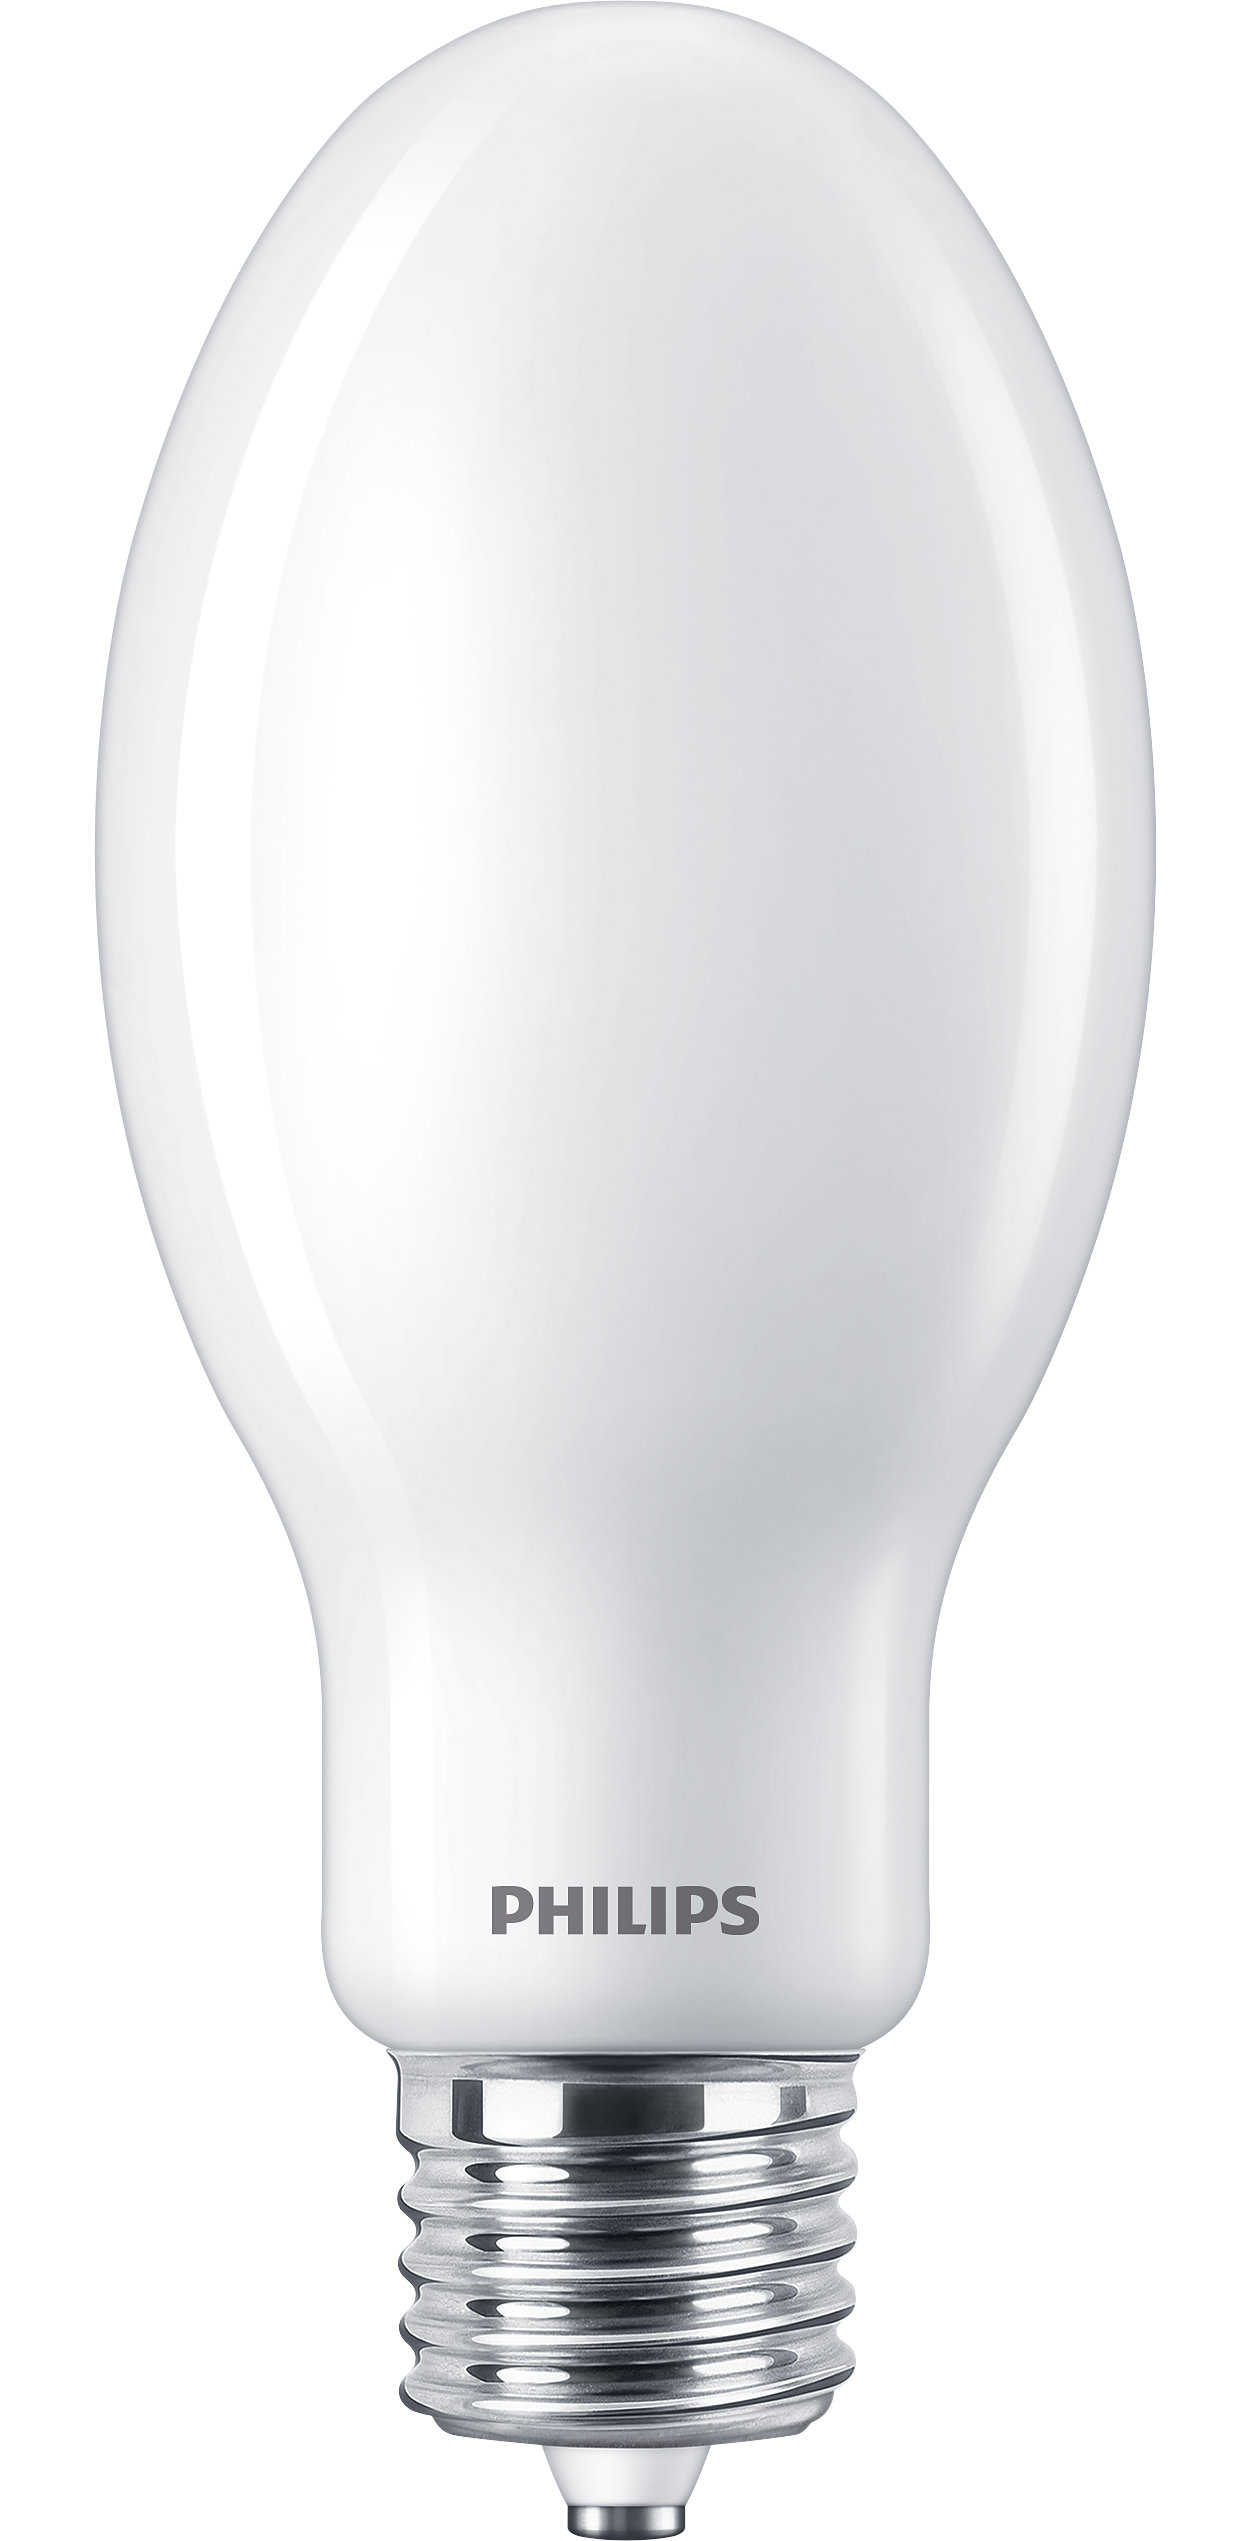 Les lampes à DHI de verre Philips  offrent une solution DEL simple et à court délai de récupération pour les remplacements des DHI et peuvent être utilisées à l’intérieur comme à l’extérieur.